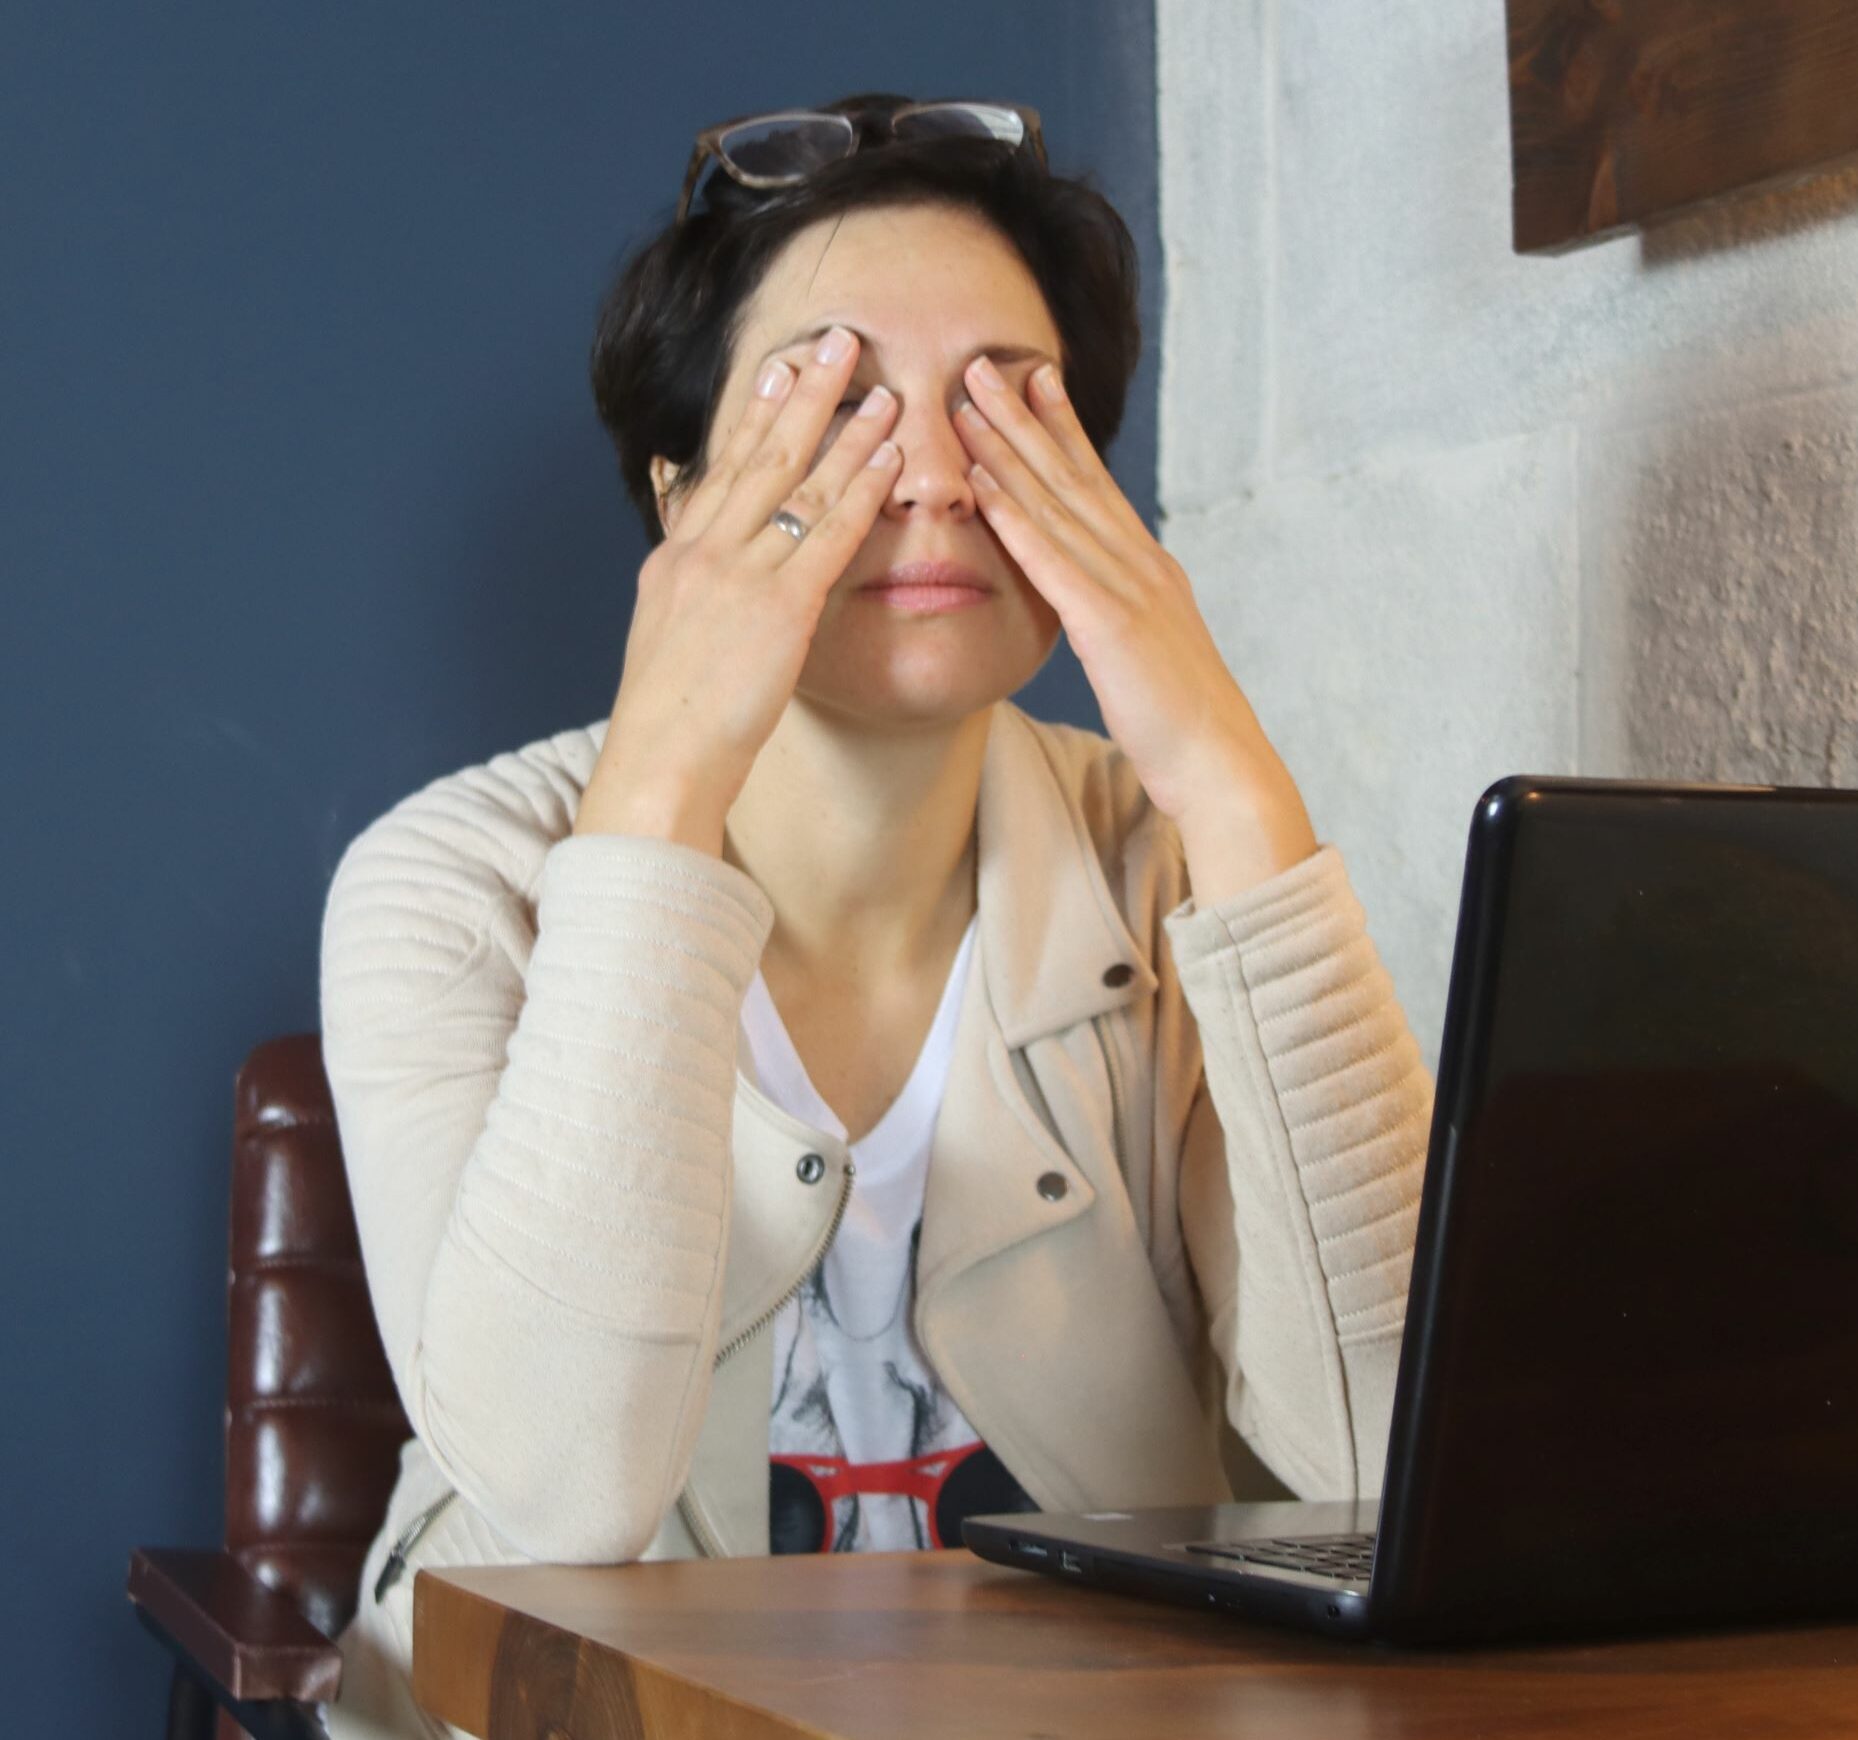 Frau entspannt ihre Augen vor dem PC